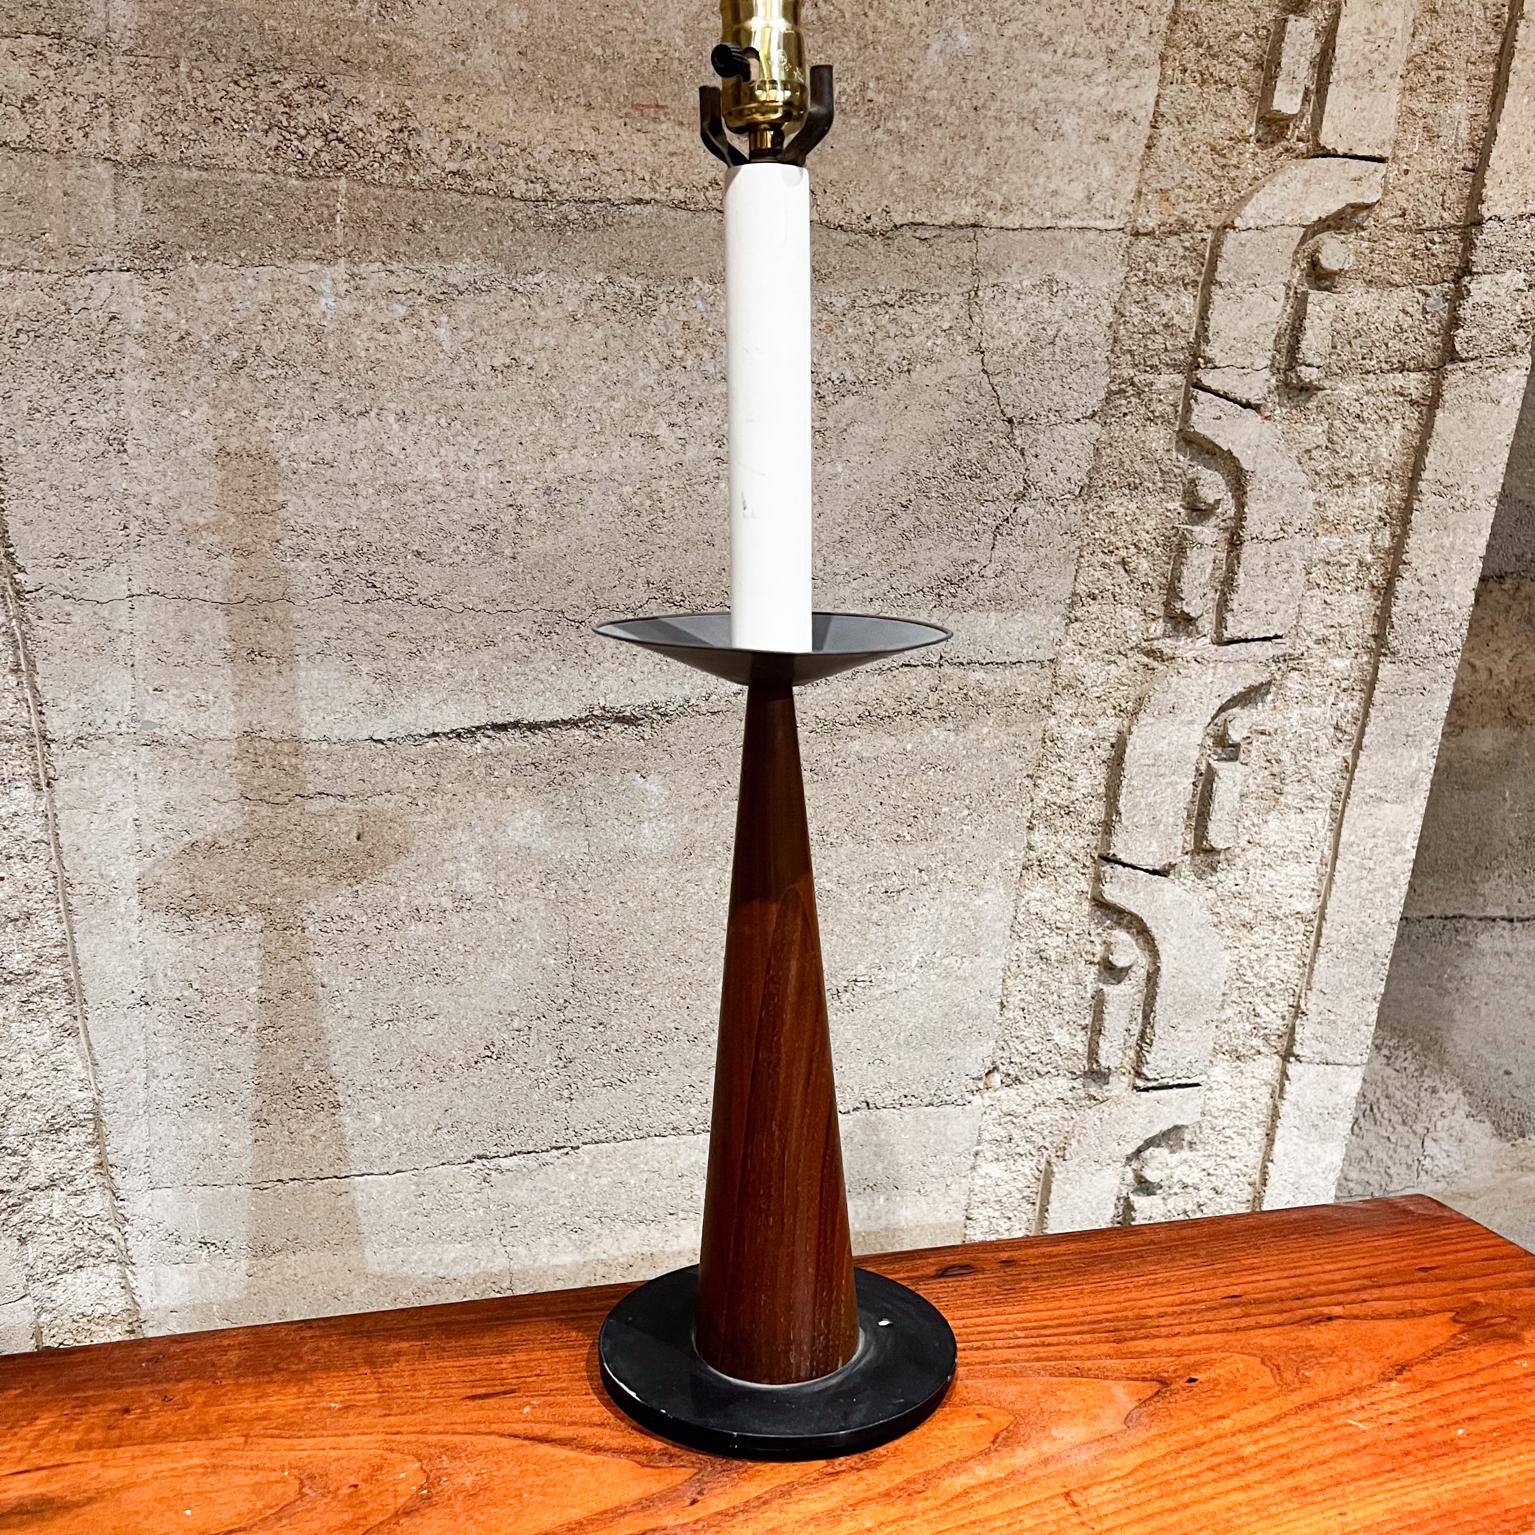 1960s Mexican Modernism Custom Cone Shaped Table Lamp (lampe de table en forme de cône)
Fait à la main Mexique
Bois d'acajou et bronze
23,5 h x 6 diamètre au plus large
Original Preowned Vintage Unrestored Condition.
L'abat-jour n'est pas